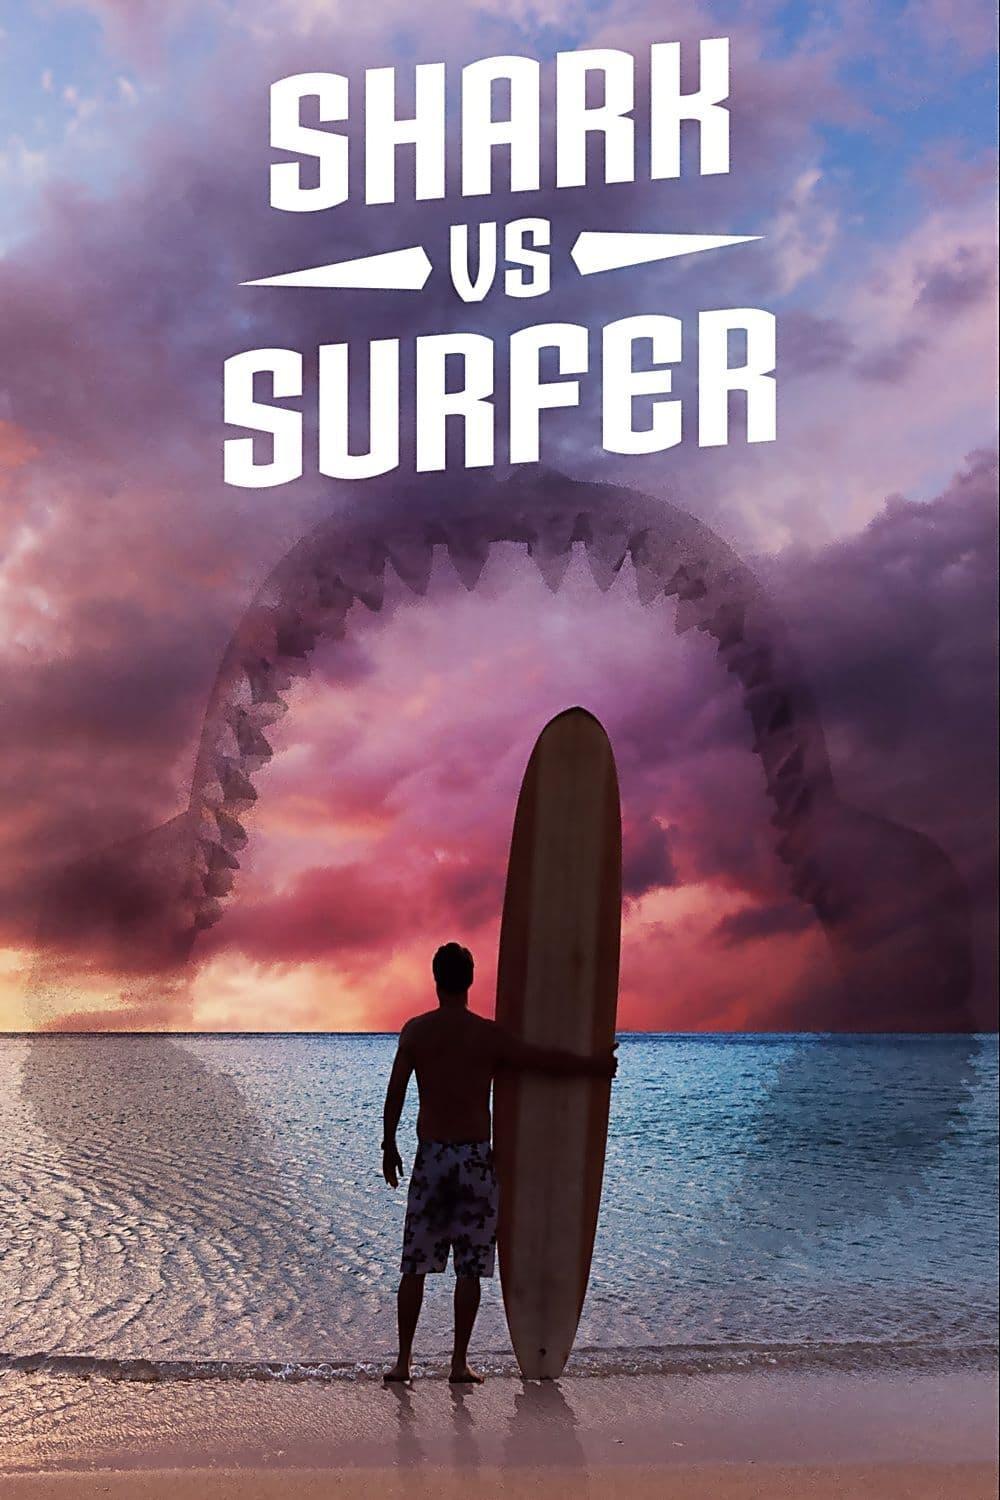 Shark vs. Surfer poster